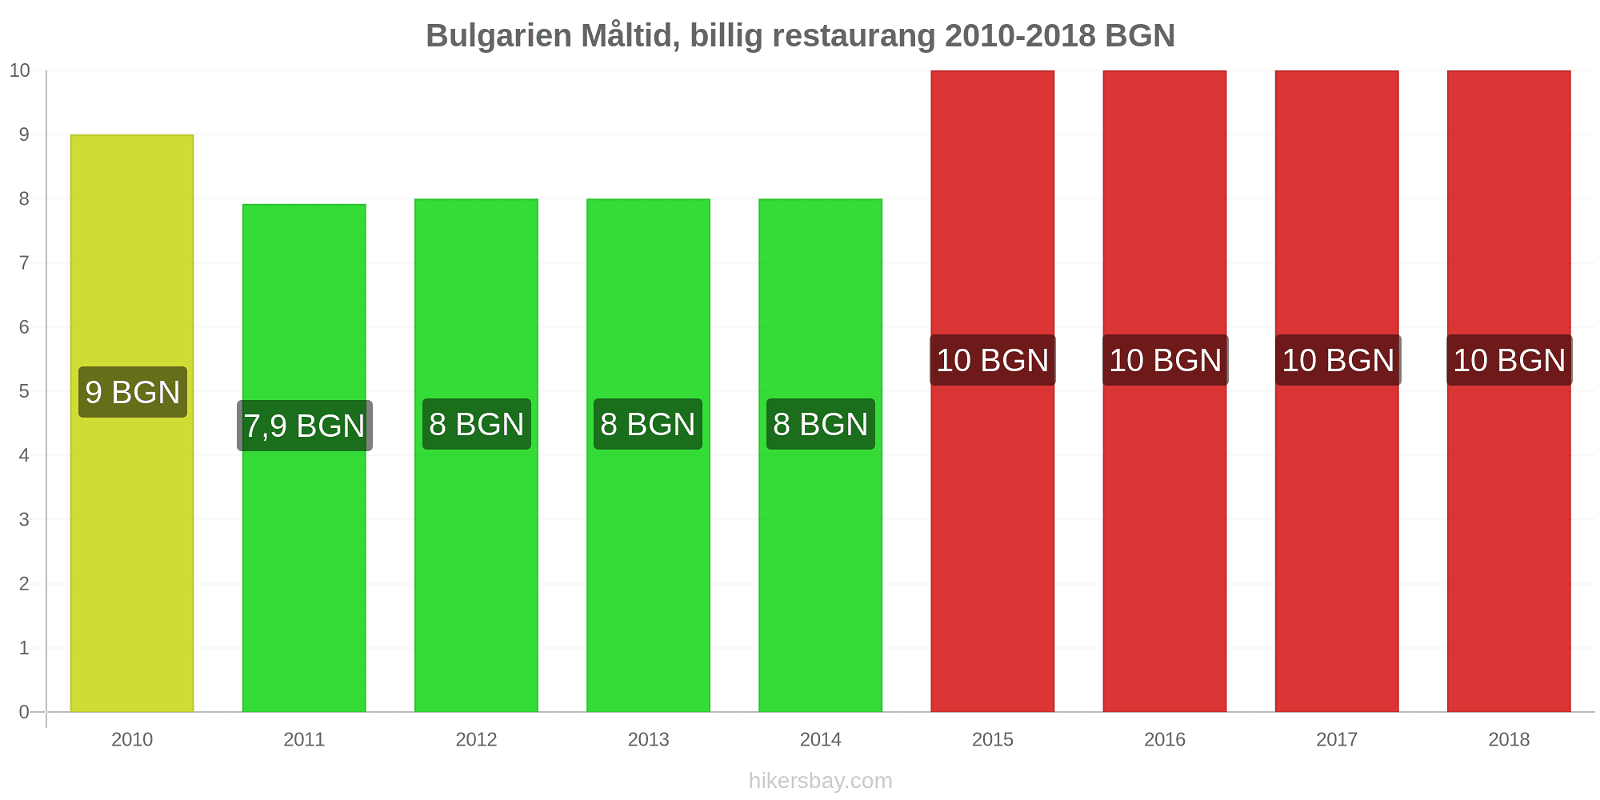 Bulgarien prisändringar Måltid i en billig restaurang hikersbay.com